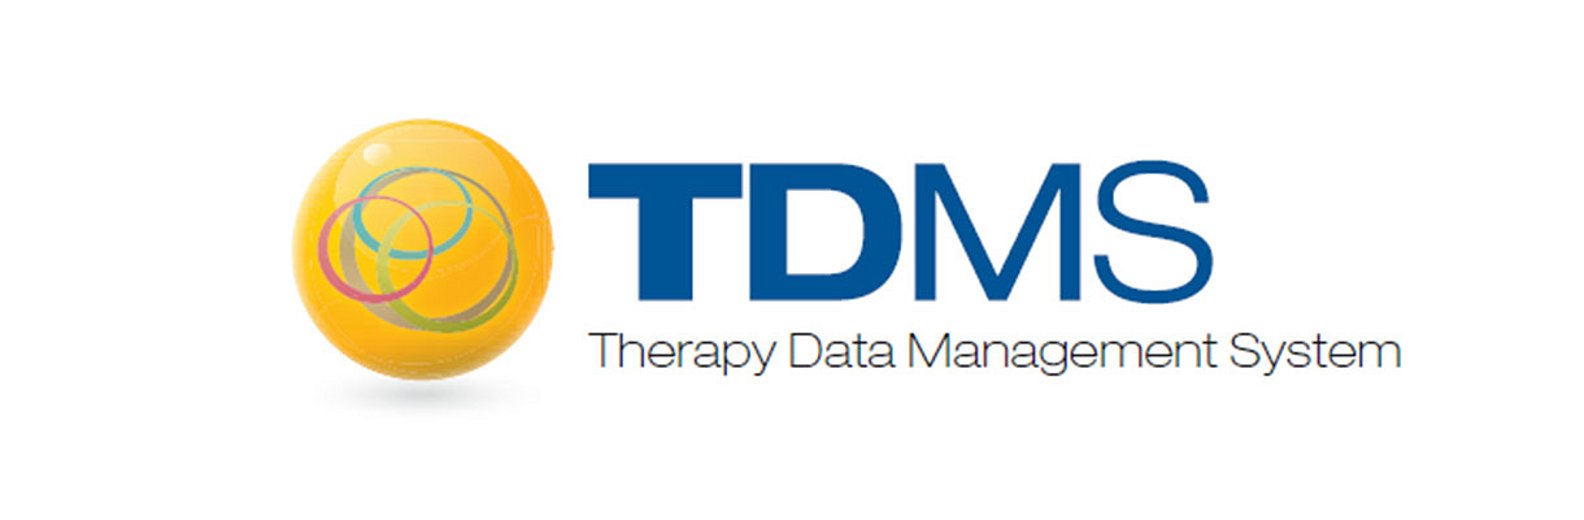 A Terápiás adatkezelő rendszer (TDMS)